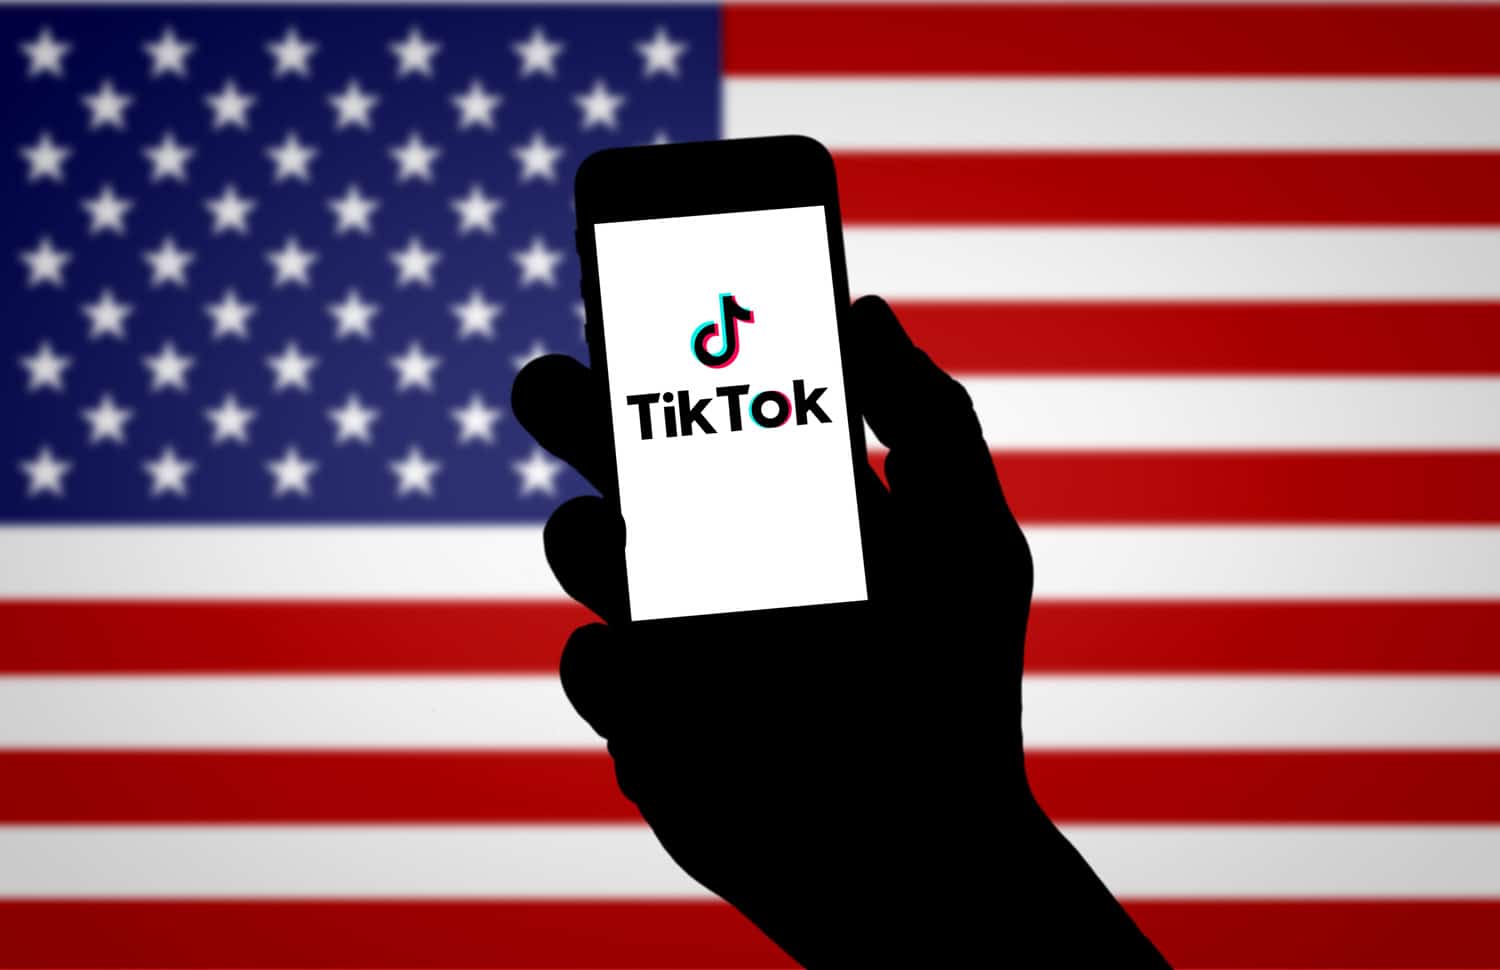 États-Unis : L'ex-secrétaire au Trésor sous Trump Steven Mnuchin veut "acheter TikTok"